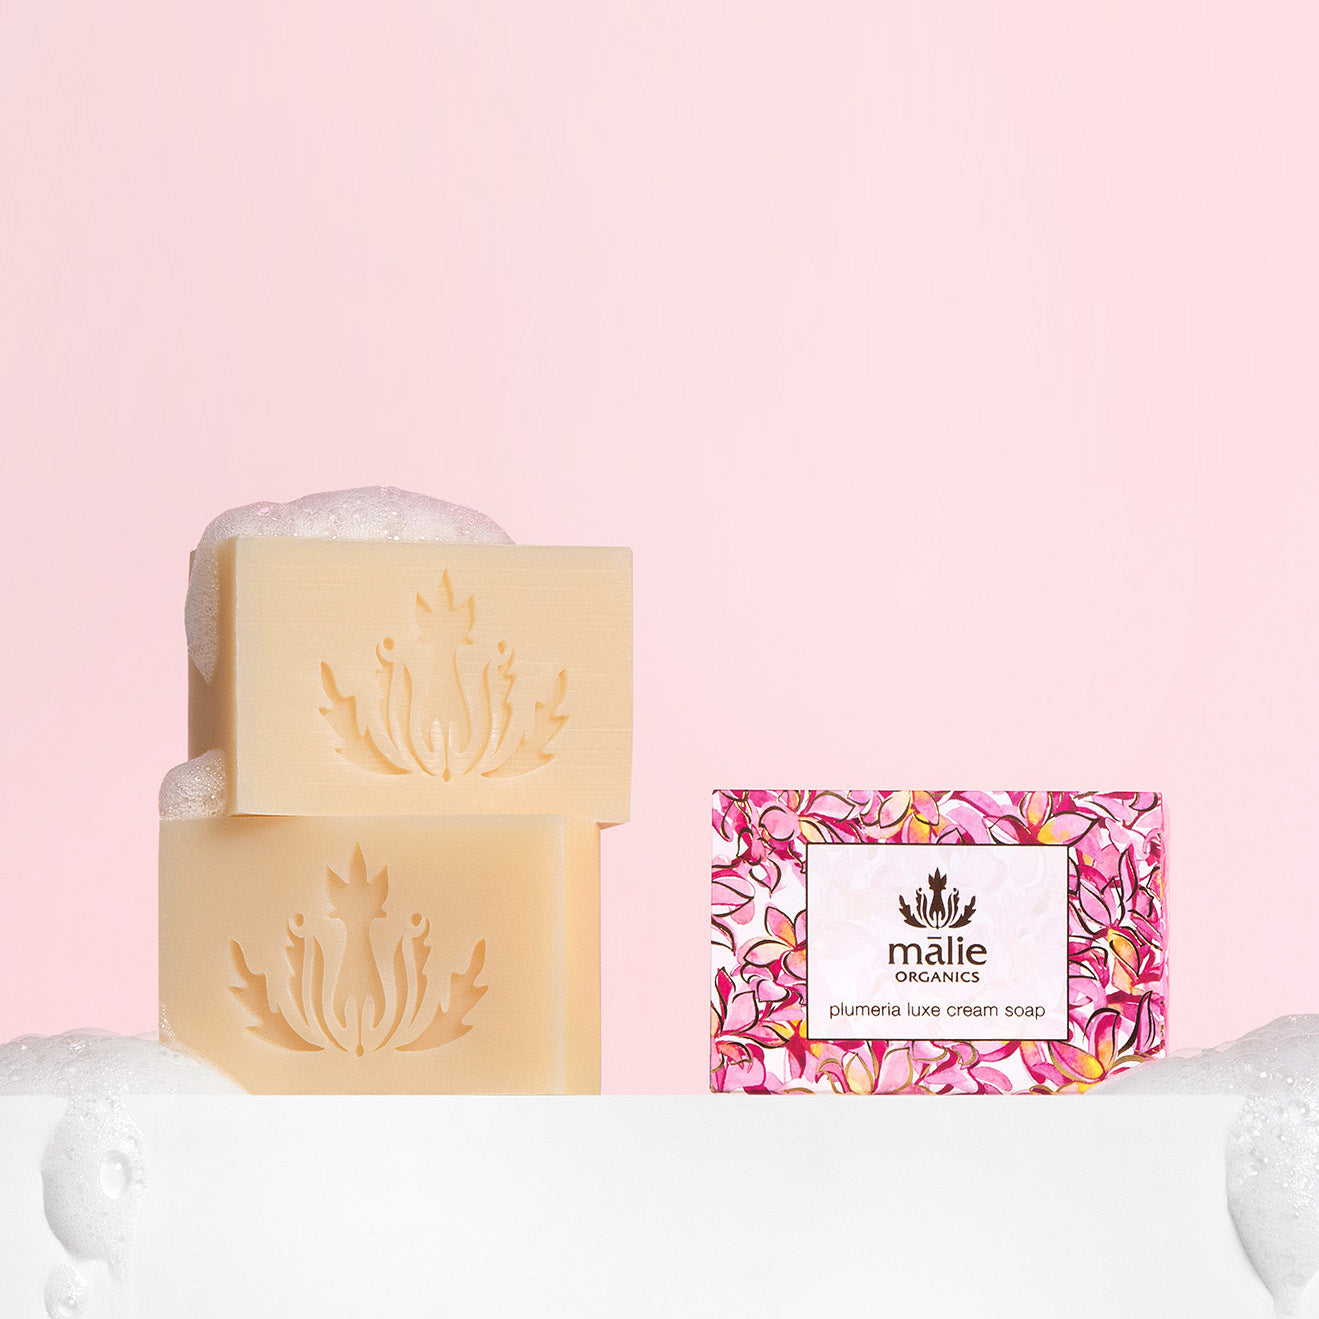 plumeria luxe cream soap - Body